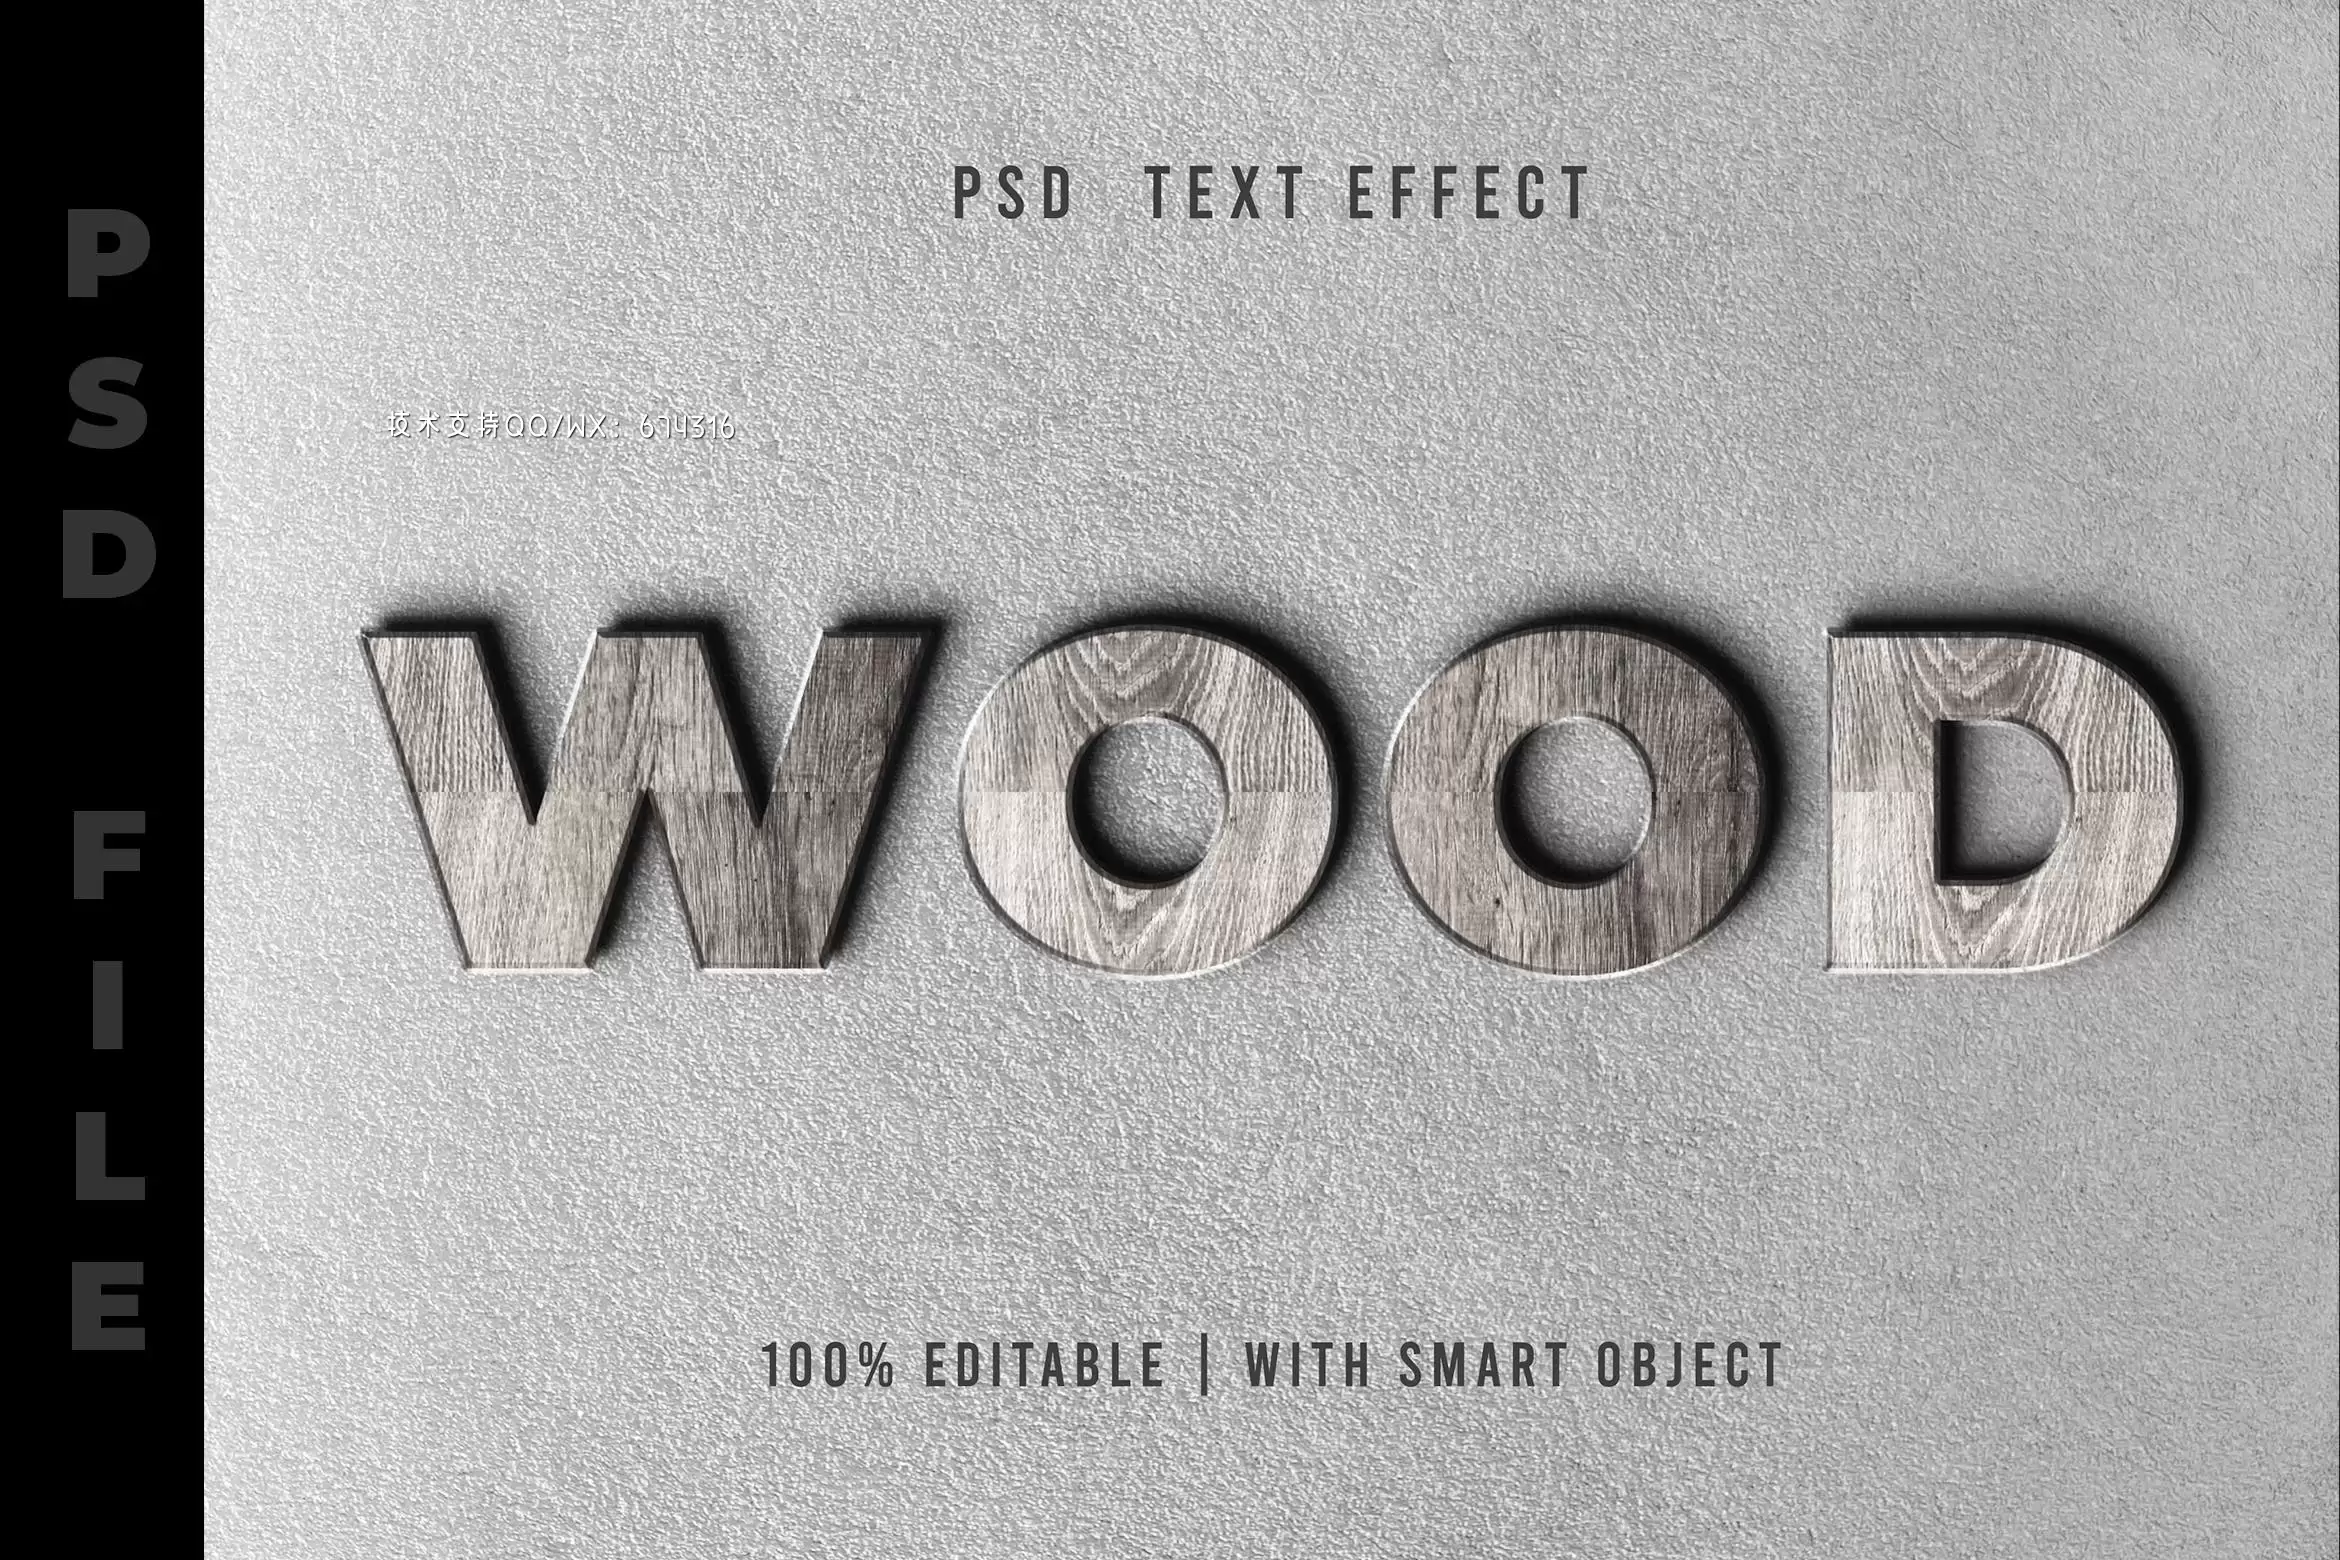 真实的木制风格logo设计展示样机 (PSD,JPG)免费下载